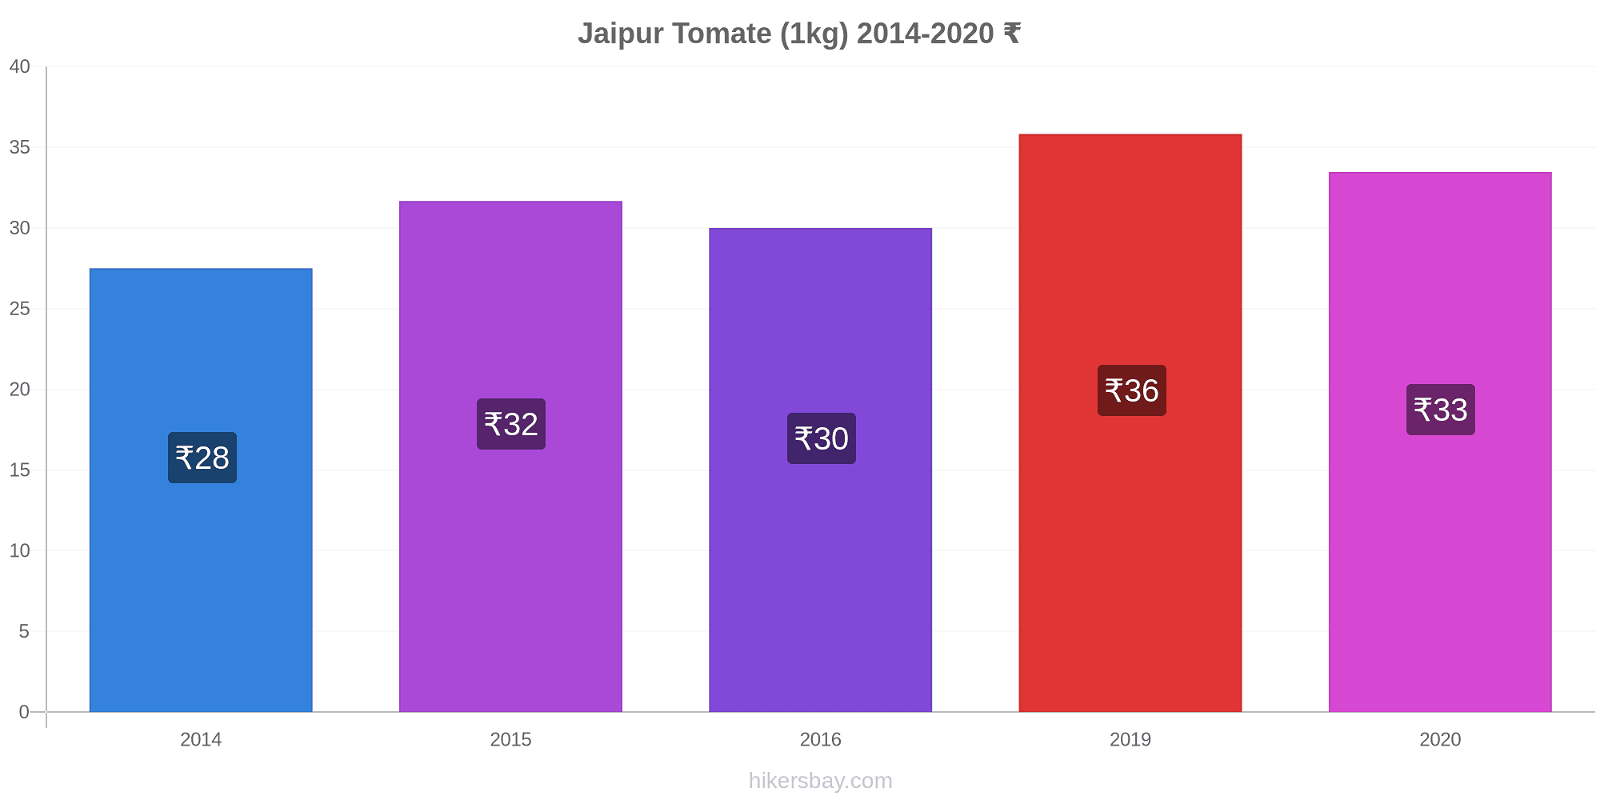 Jaipur variação de preço Tomate (1kg) hikersbay.com